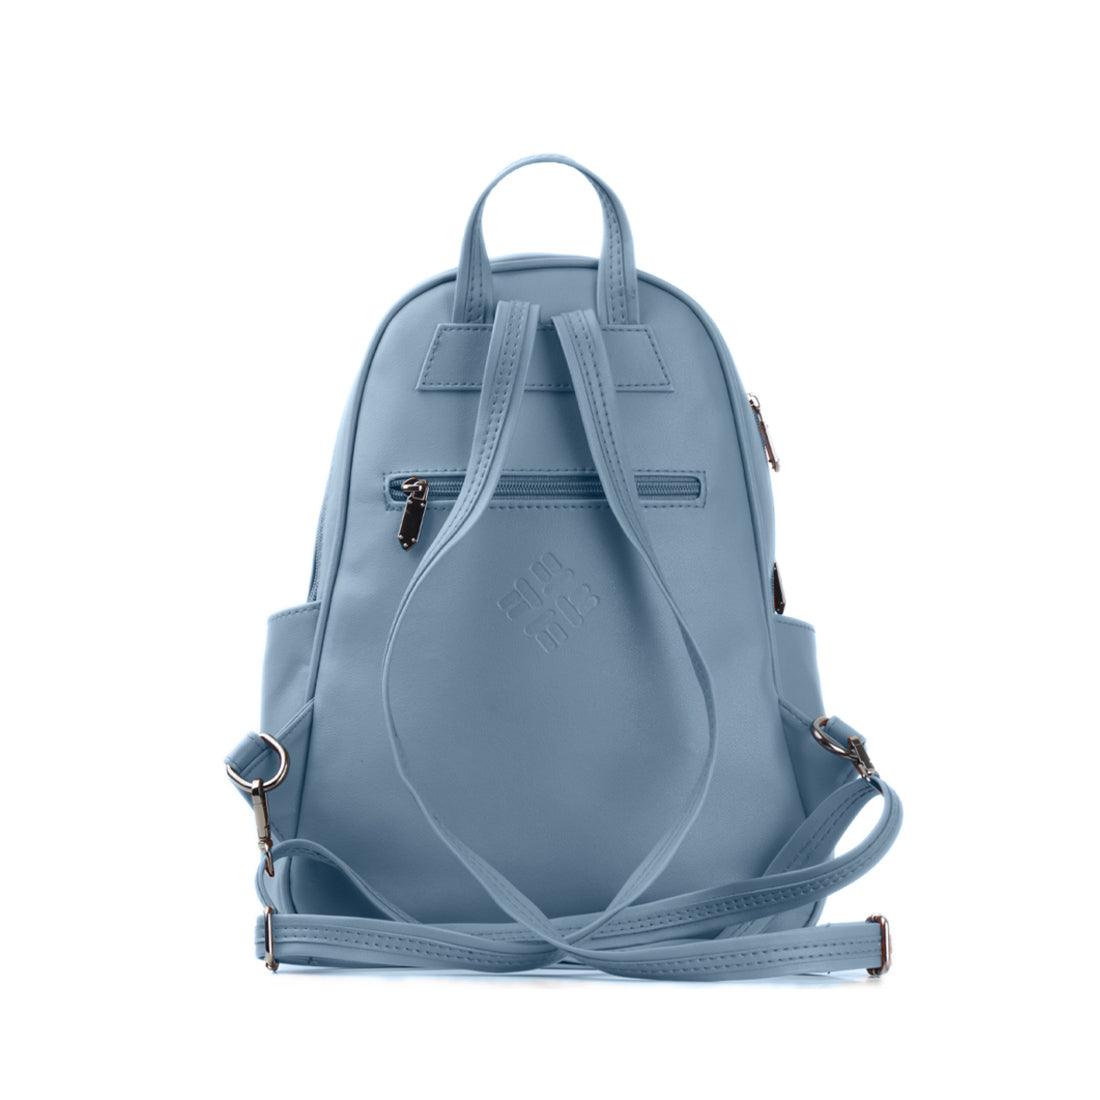 Blue Vivid Backpack Floral Dance - CANVAEGYPT